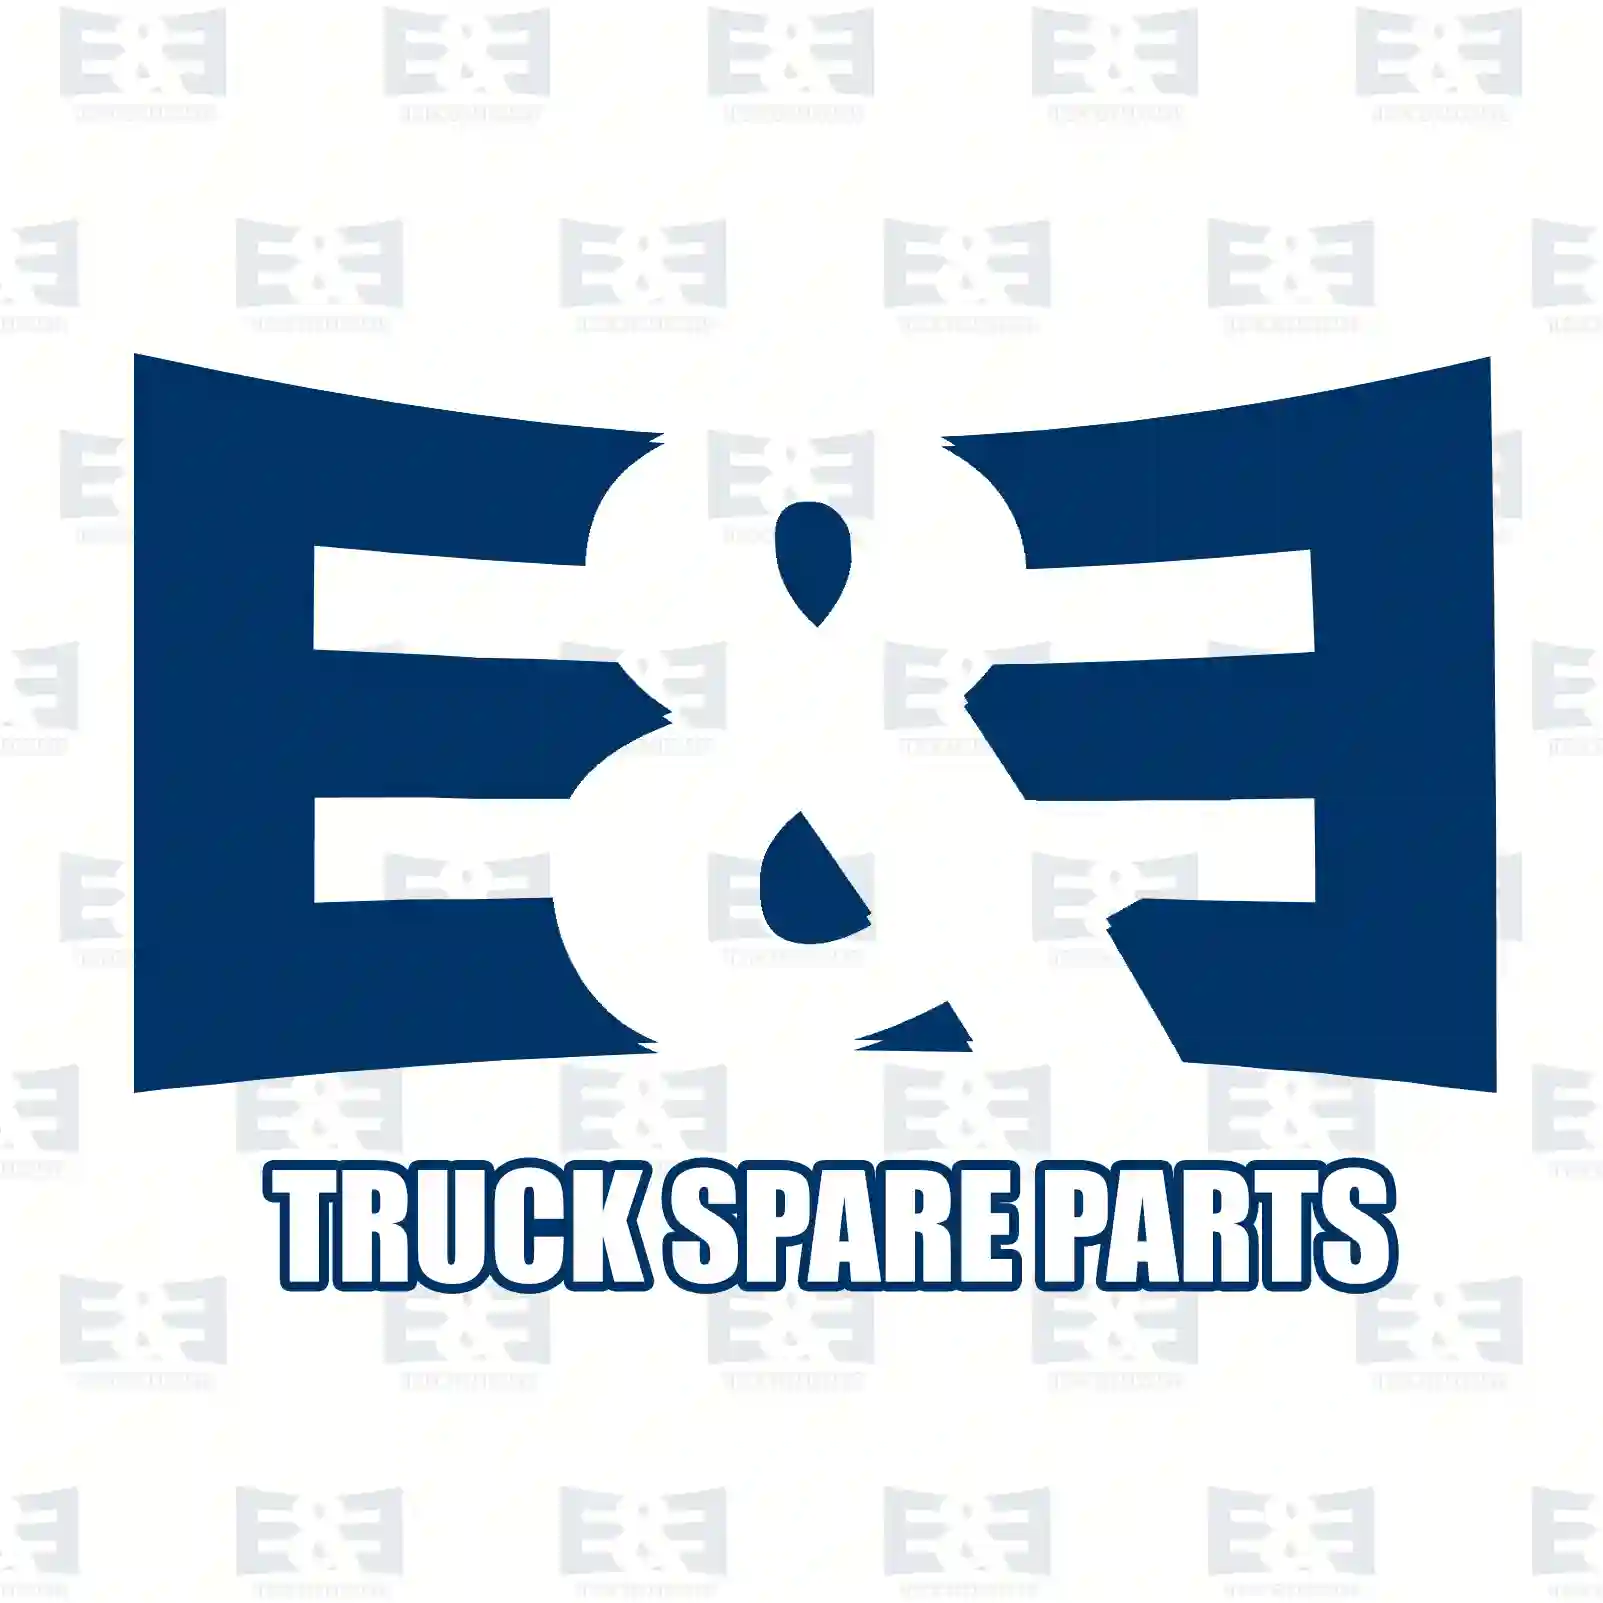 Brake shoe kit, with linings, 2E2295269, 2E0698525A, 2E0698525D, 9064200220, 9064200420, 2E0698525A, 2E0698525D, 2E0698525A, 2E0698525D, 2E0609537B, 2E0698525A, 2E0698525D ||  2E2295269 E&E Truck Spare Parts | Truck Spare Parts, Auotomotive Spare Parts Brake shoe kit, with linings, 2E2295269, 2E0698525A, 2E0698525D, 9064200220, 9064200420, 2E0698525A, 2E0698525D, 2E0698525A, 2E0698525D, 2E0609537B, 2E0698525A, 2E0698525D ||  2E2295269 E&E Truck Spare Parts | Truck Spare Parts, Auotomotive Spare Parts